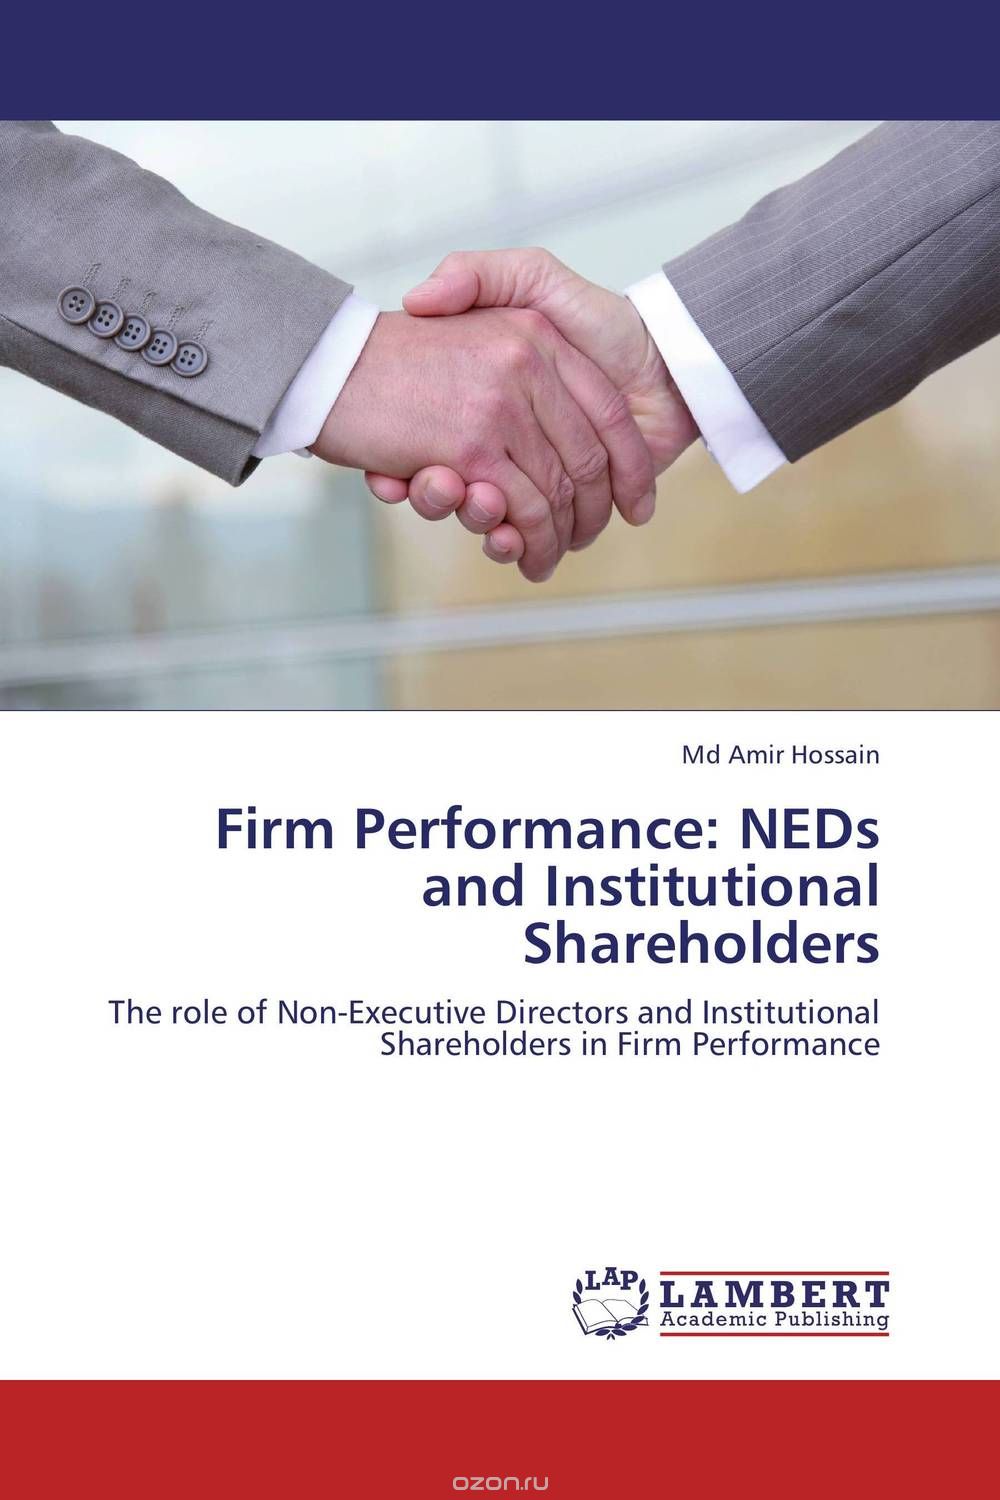 Скачать книгу "Firm Performance: NEDs and Institutional Shareholders"